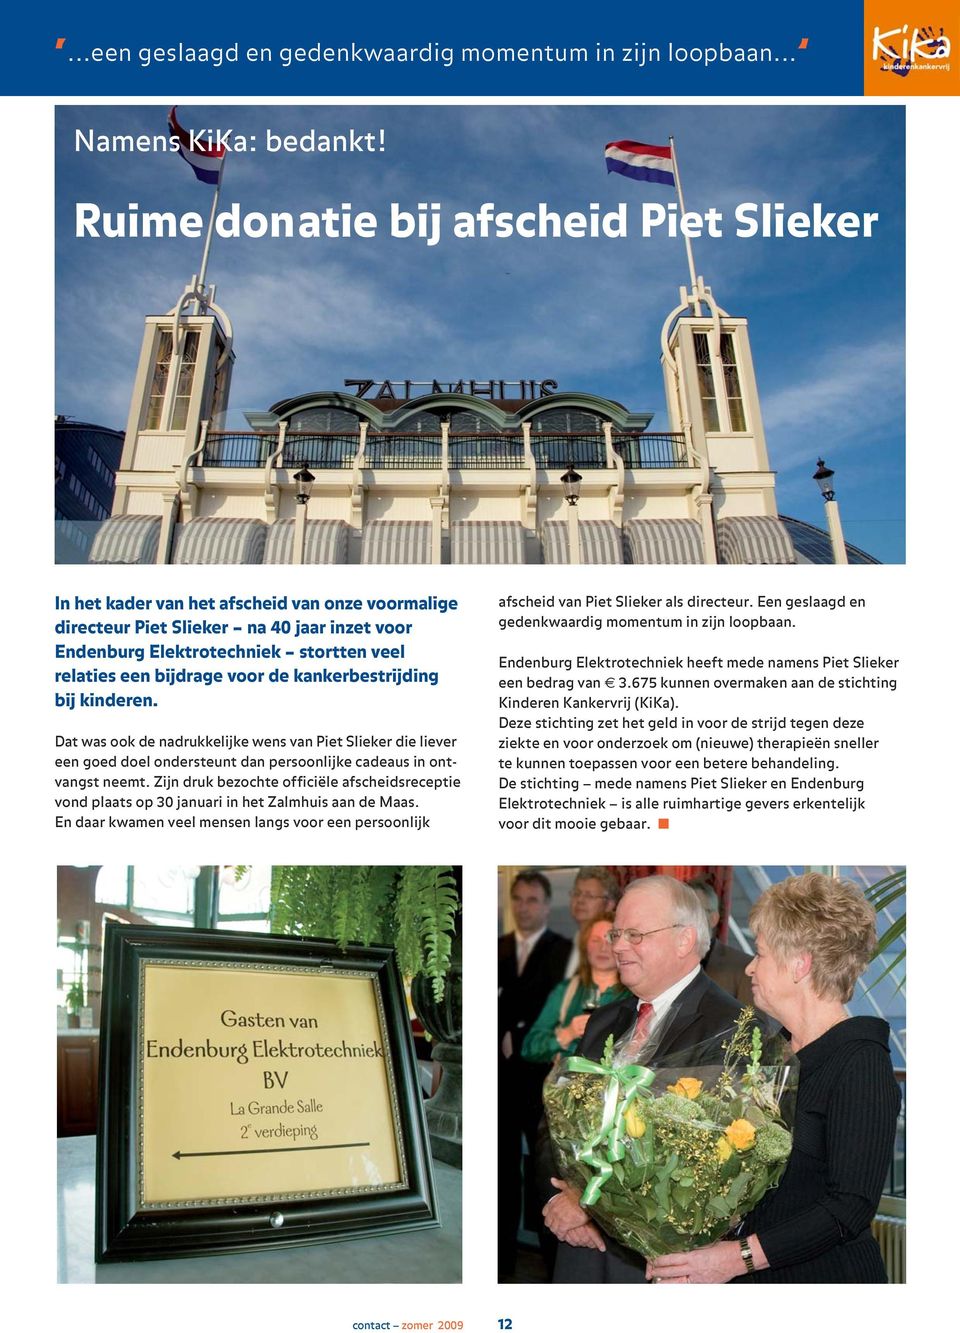 voor de kankerbestrijding bij kinderen. Dat was ook de nadrukkelijke wens van Piet Slieker die liever een goed doel ondersteunt dan persoonlijke cadeaus in ontvangst neemt.